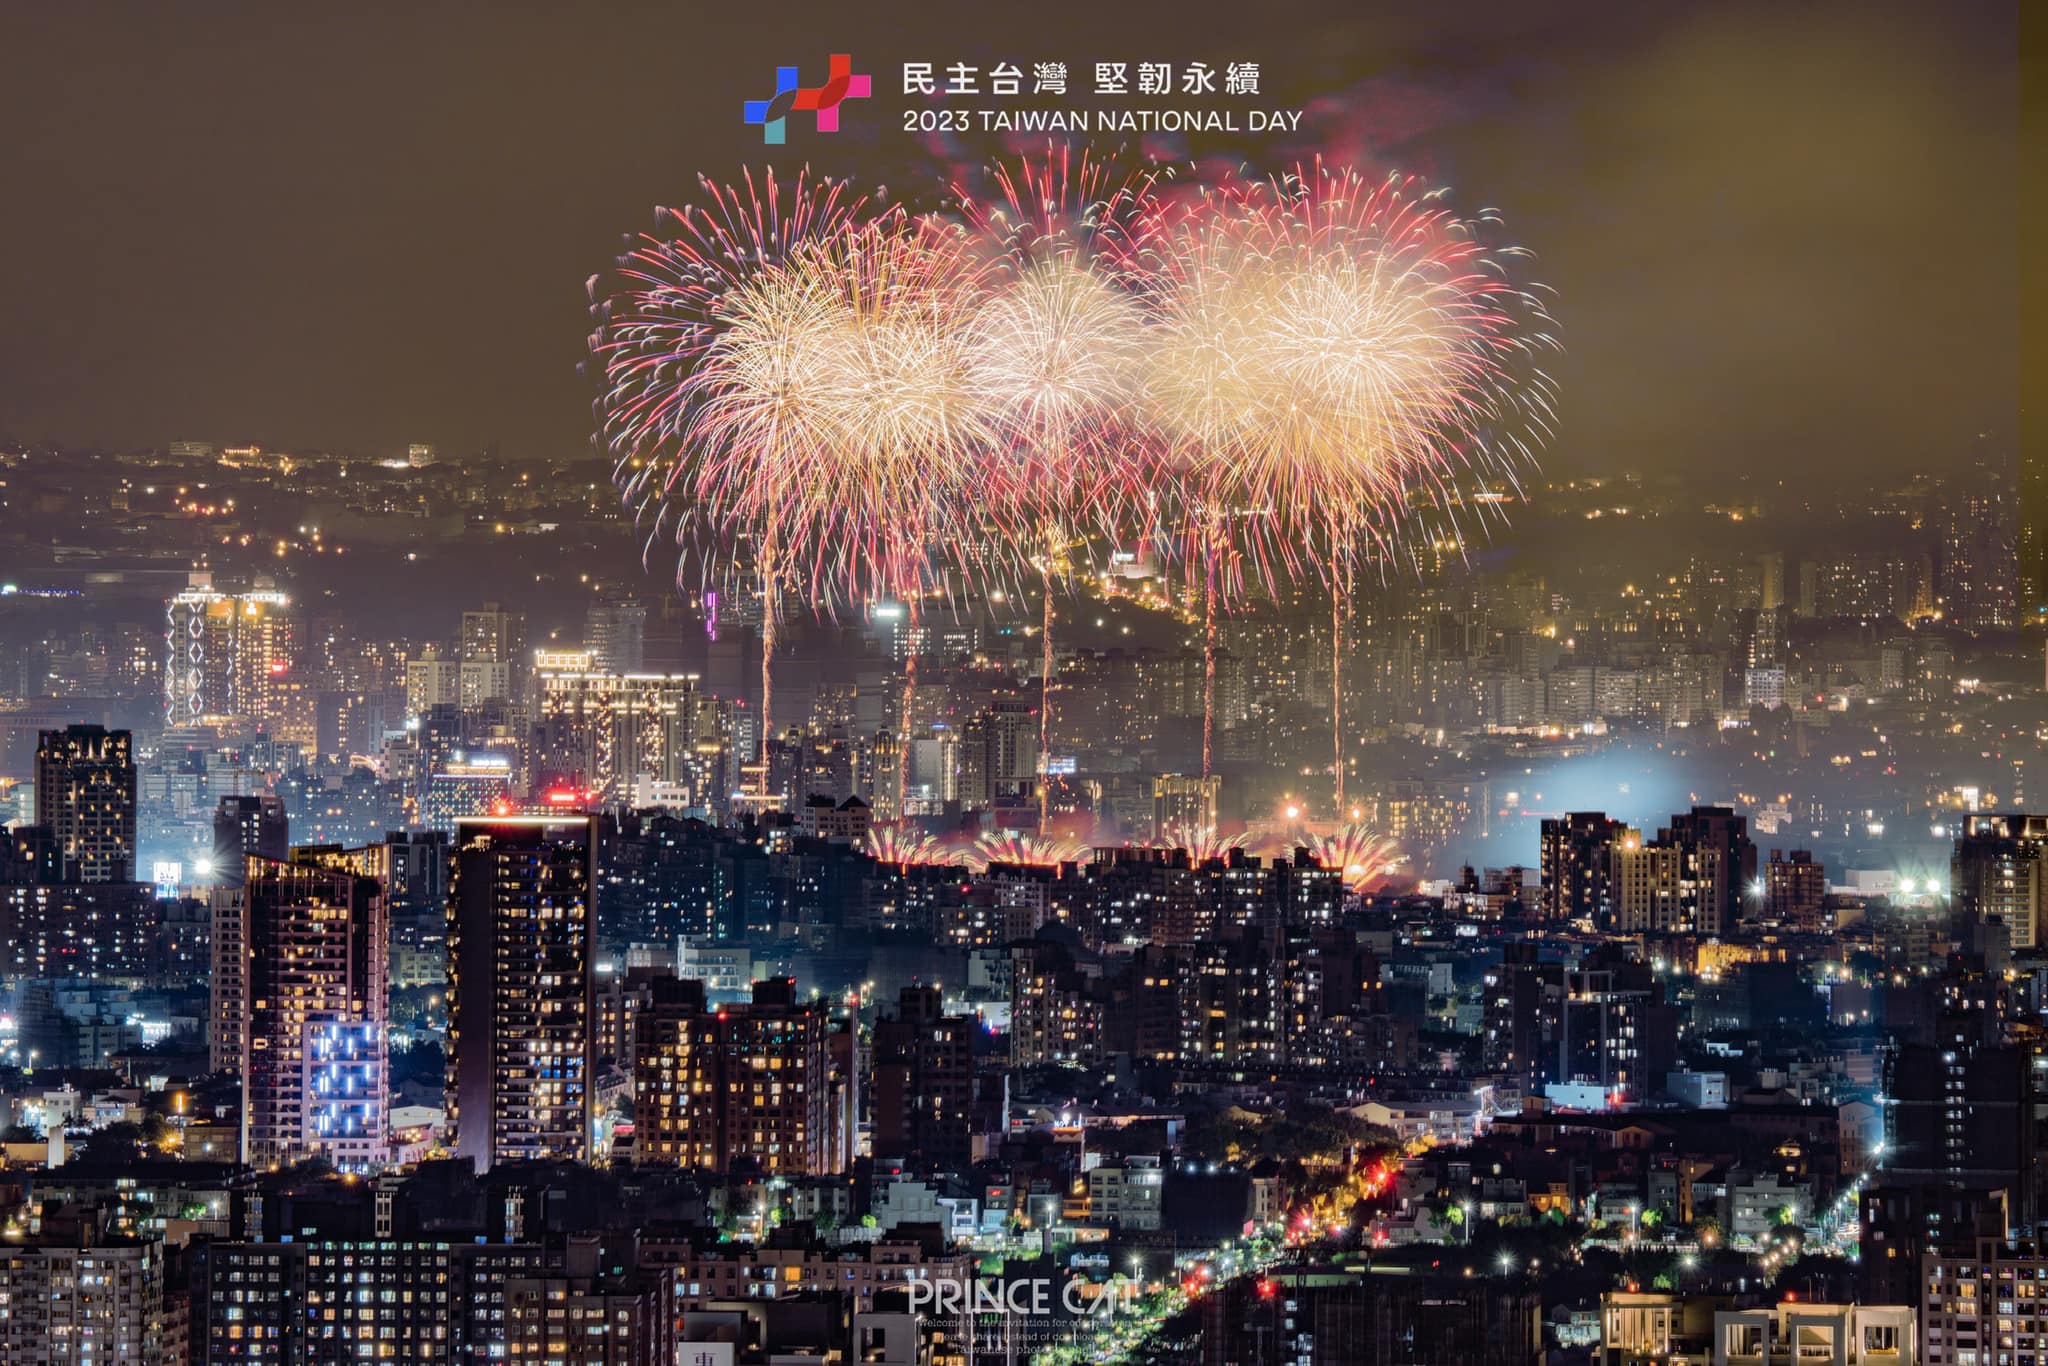 ภาพพลุสวยๆ จากวันทดลองจุดพลุฉลองวันชาติ  ภาพ／จากเฟซบุ๊ก台灣花火攝影情報 